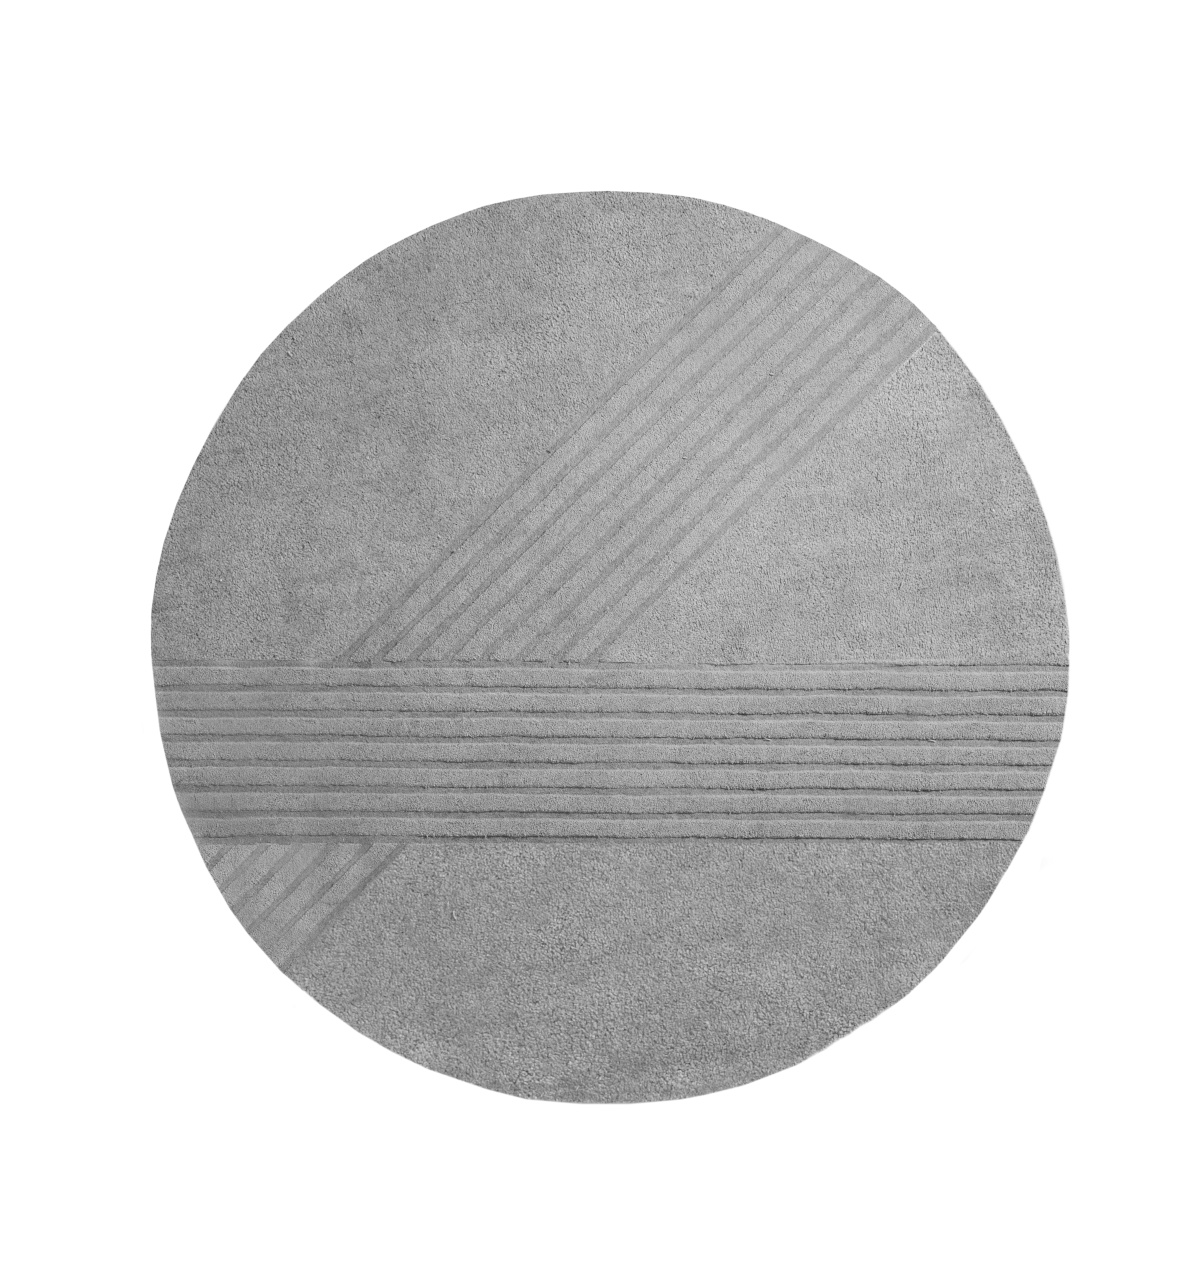 Kyoto Teppich, Ø 250 cm, grey